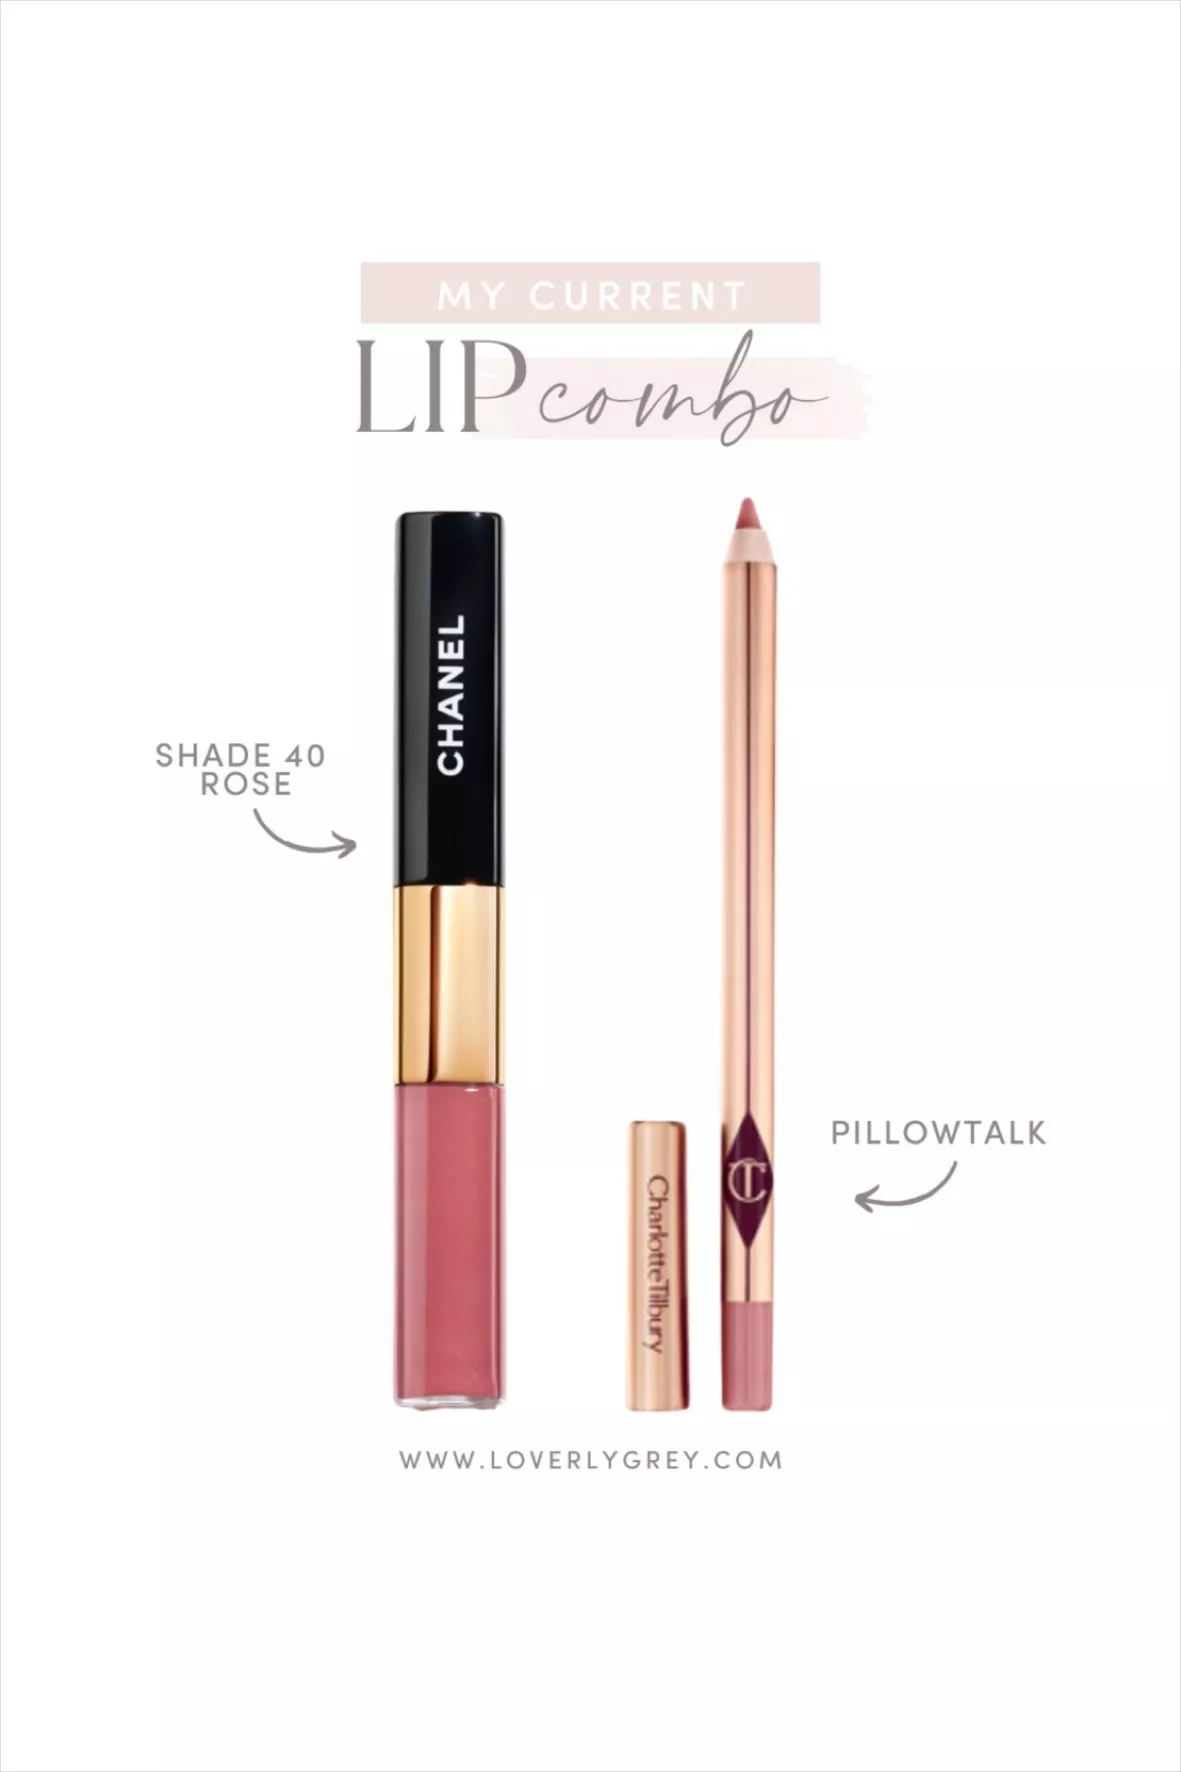 The New CHANEL Le Rouge Duo Ultra Tenue Longwear Liquid Lipsticks 